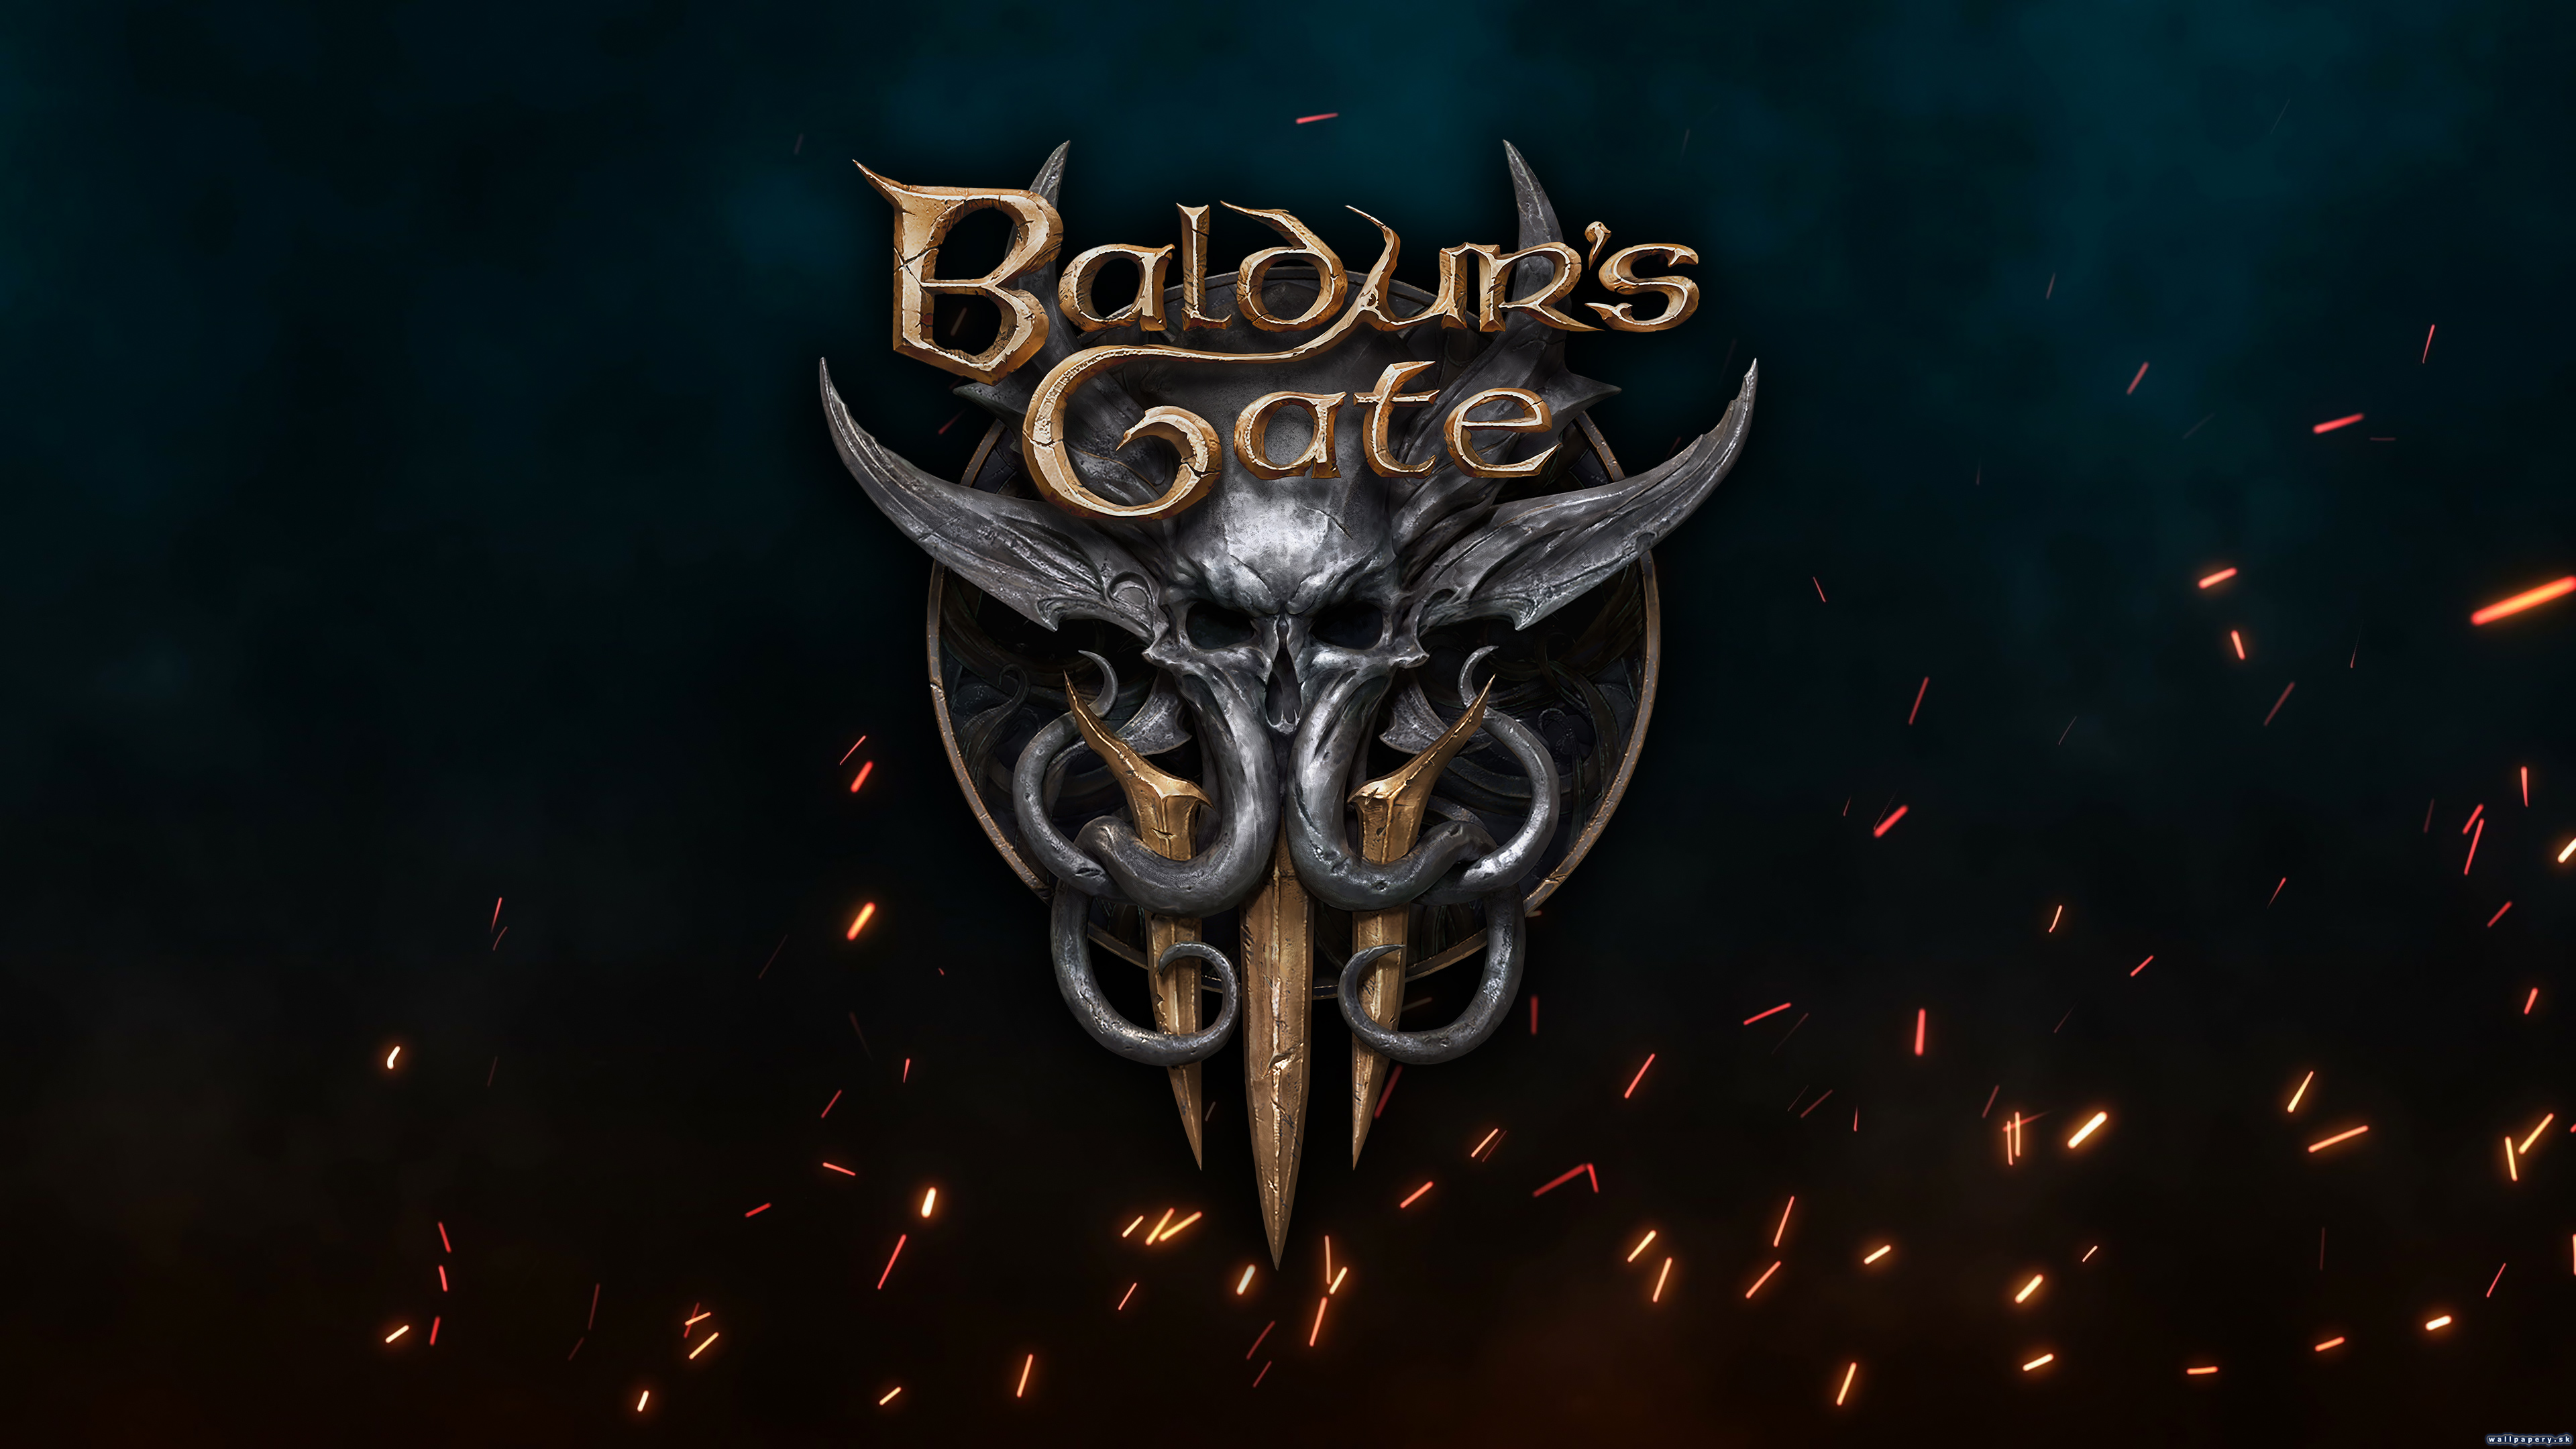 Baldur's Gate 3 - wallpaper 2